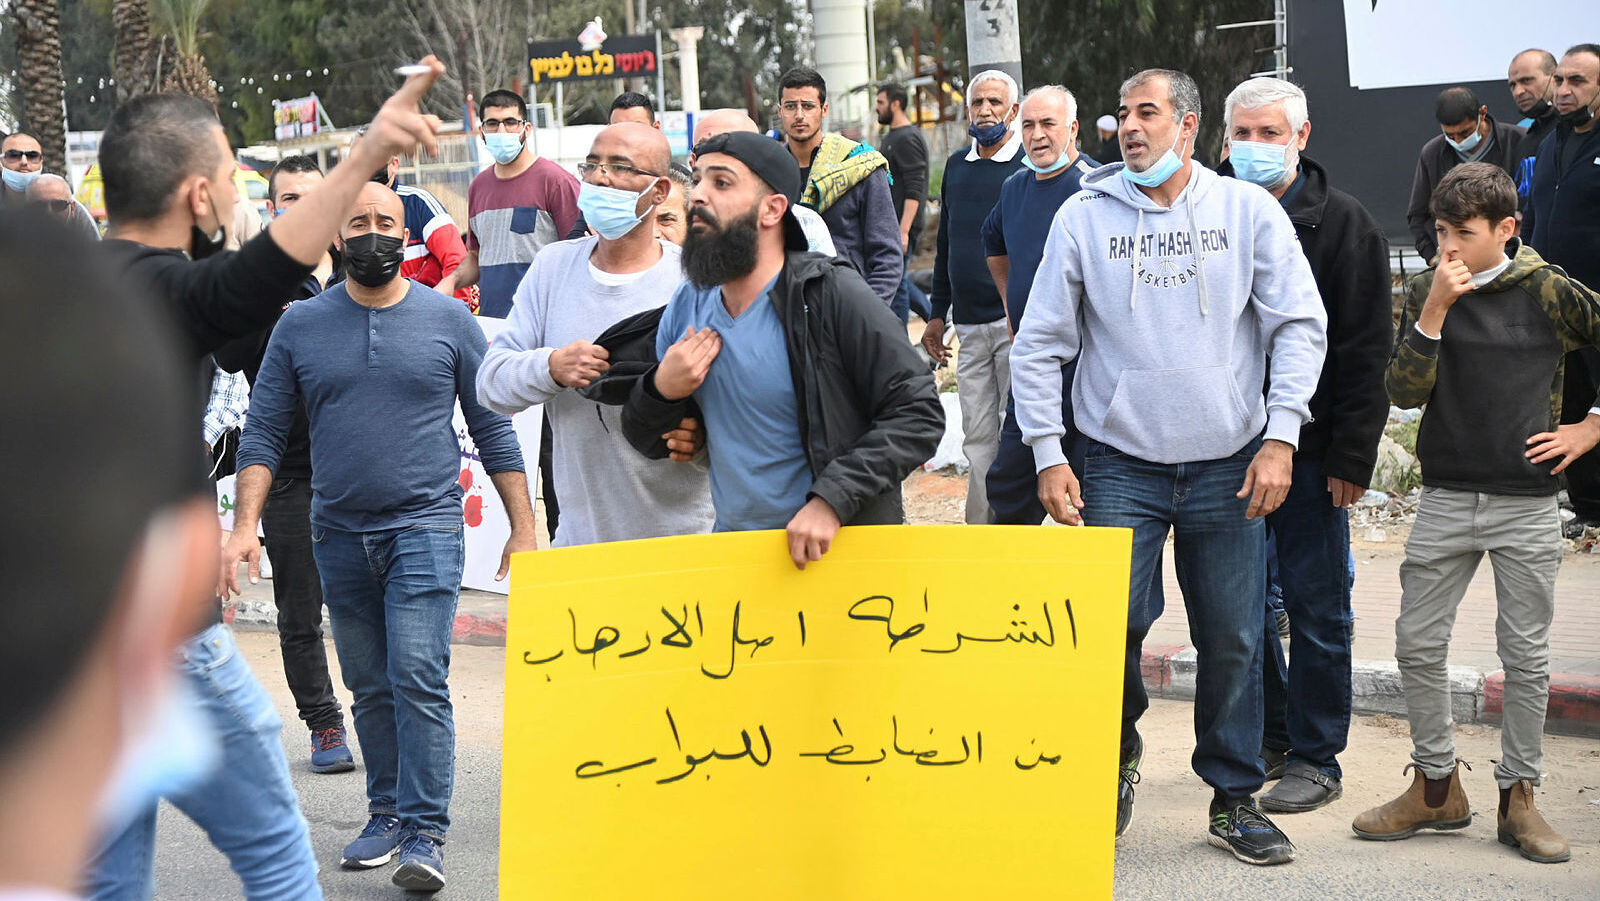 הפגנה ב קלוונסוה בעקבות מקרי רצח ו אלימות ב חברה הערבית המגזר הערבי